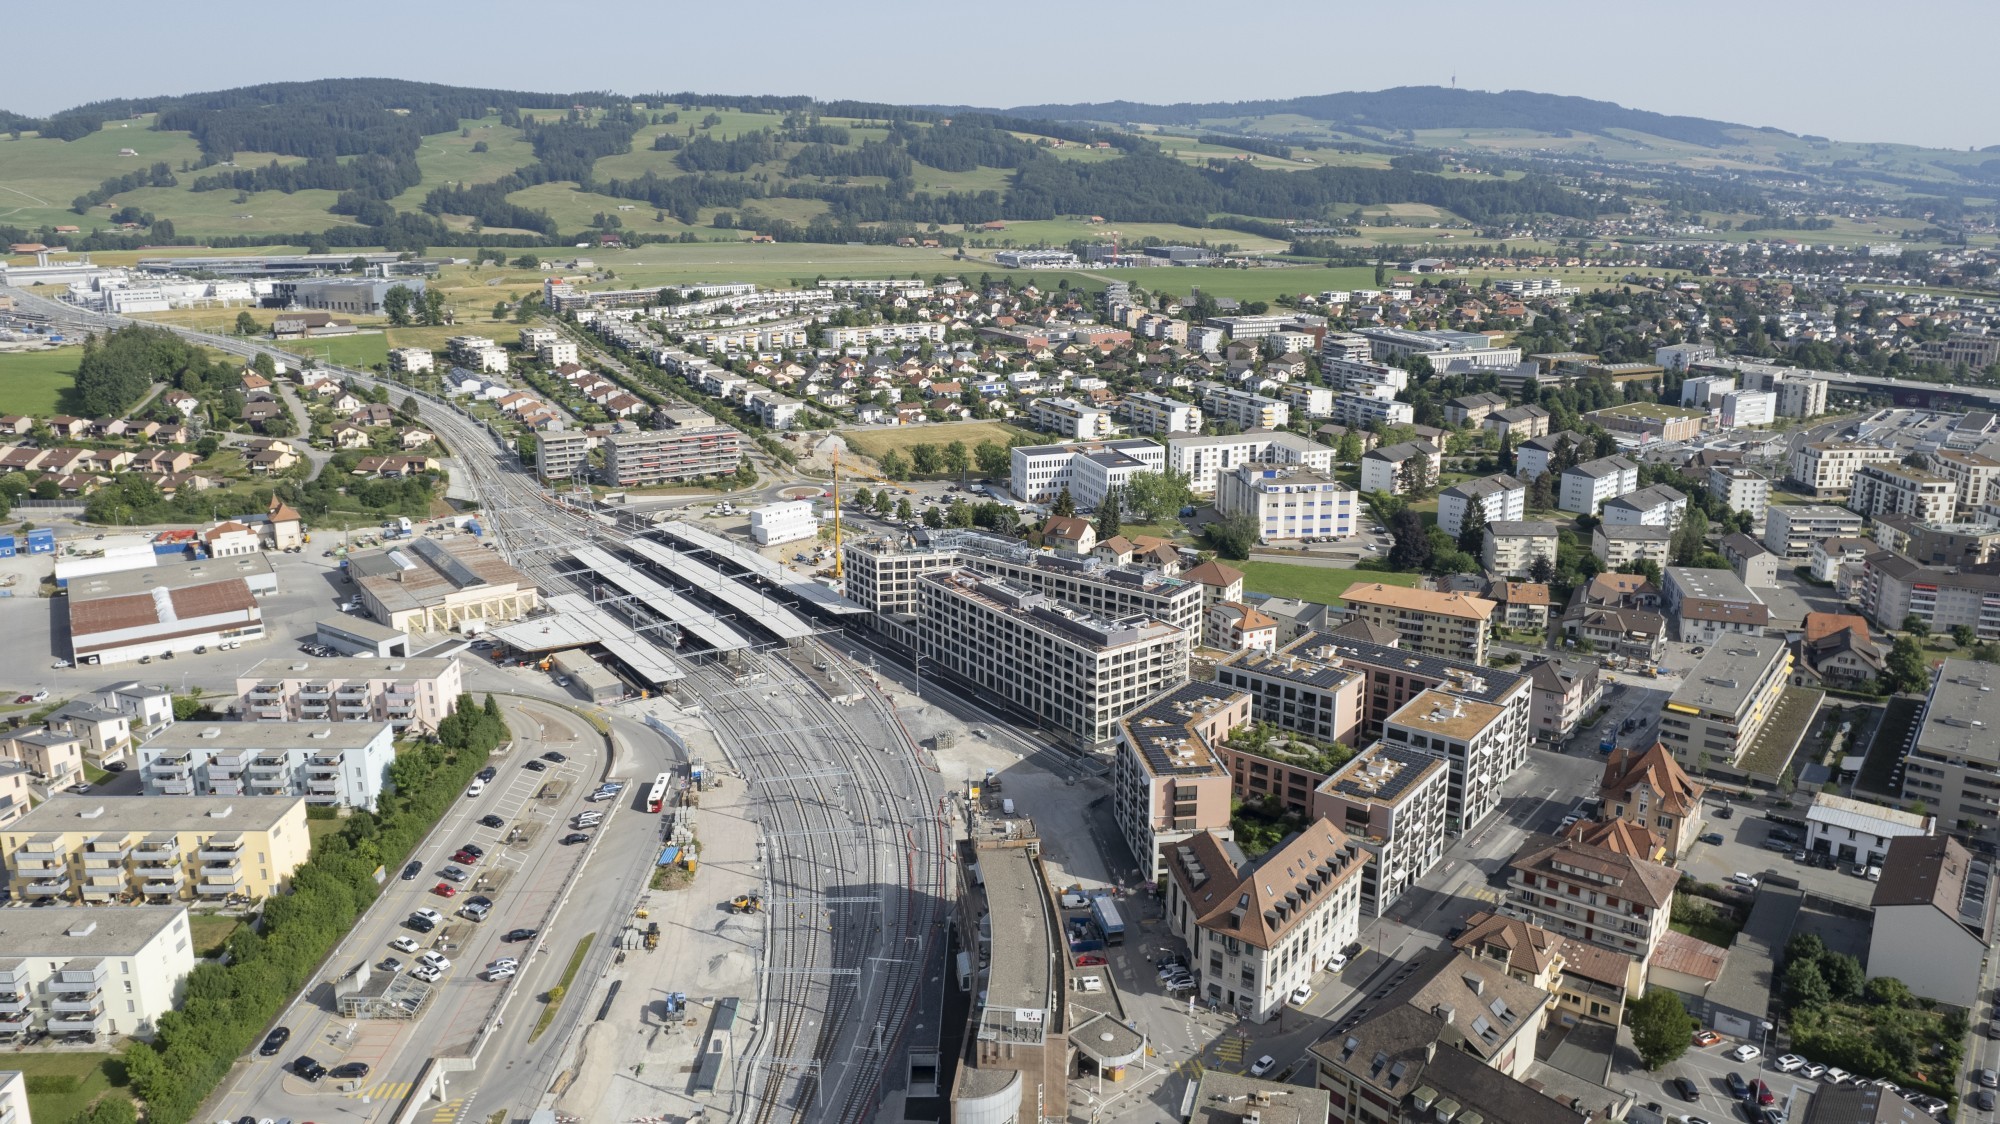 Avec le déplacement de la gare de Bulle et la construction de ce nouvel ensemble bâti, le centre de la ville de Bulle se déplace aussi et se redéfinit.